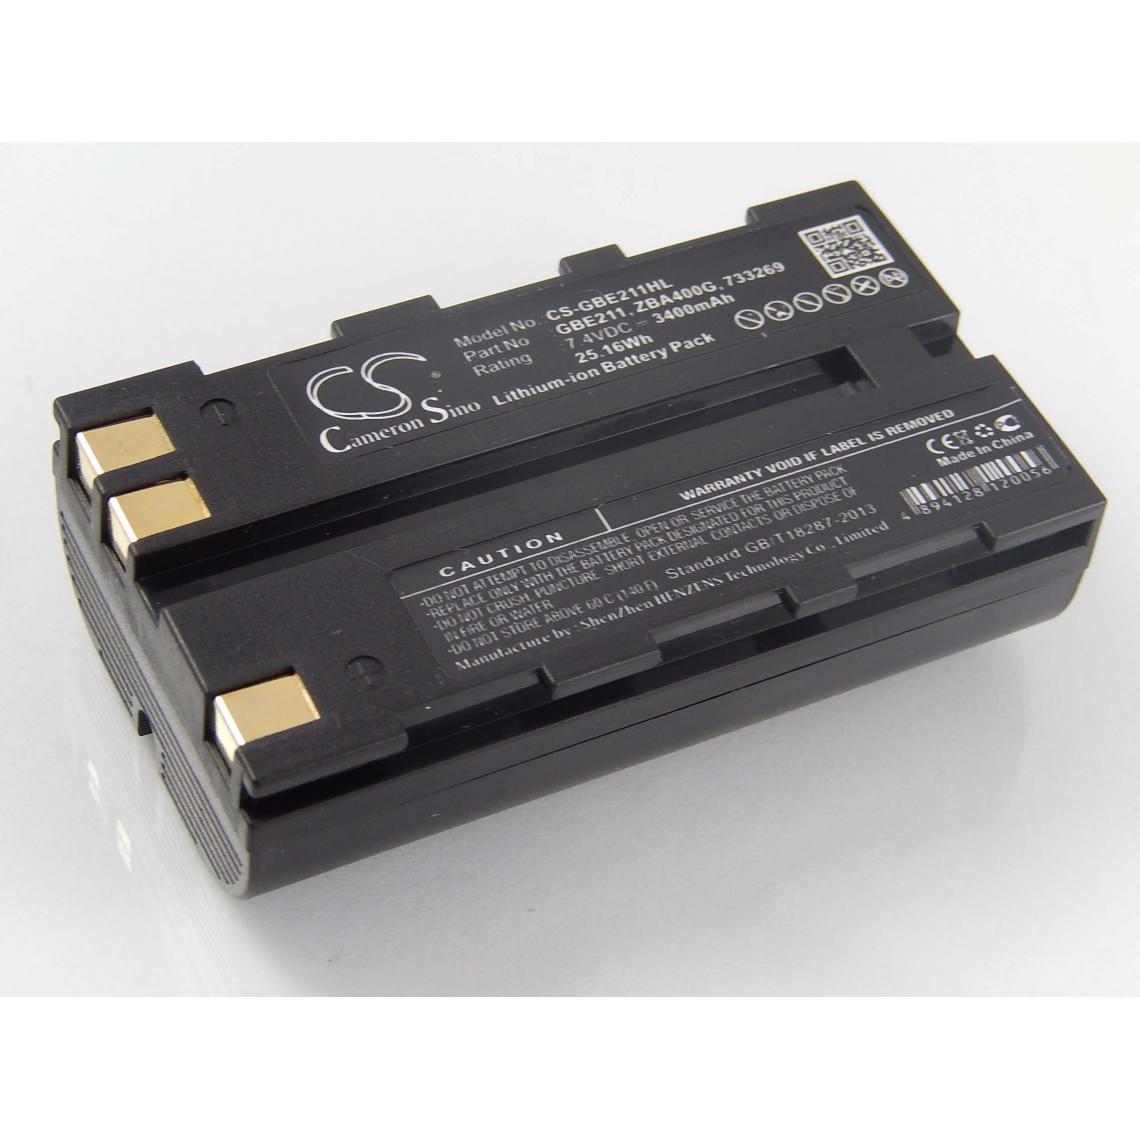 Vhbw - vhbw Batterie compatible avec Leica TCR407, TCR407 Power dispositif de mesure laser, outil de mesure (3400mAh, 7,4V, Li-ion) - Piles rechargeables